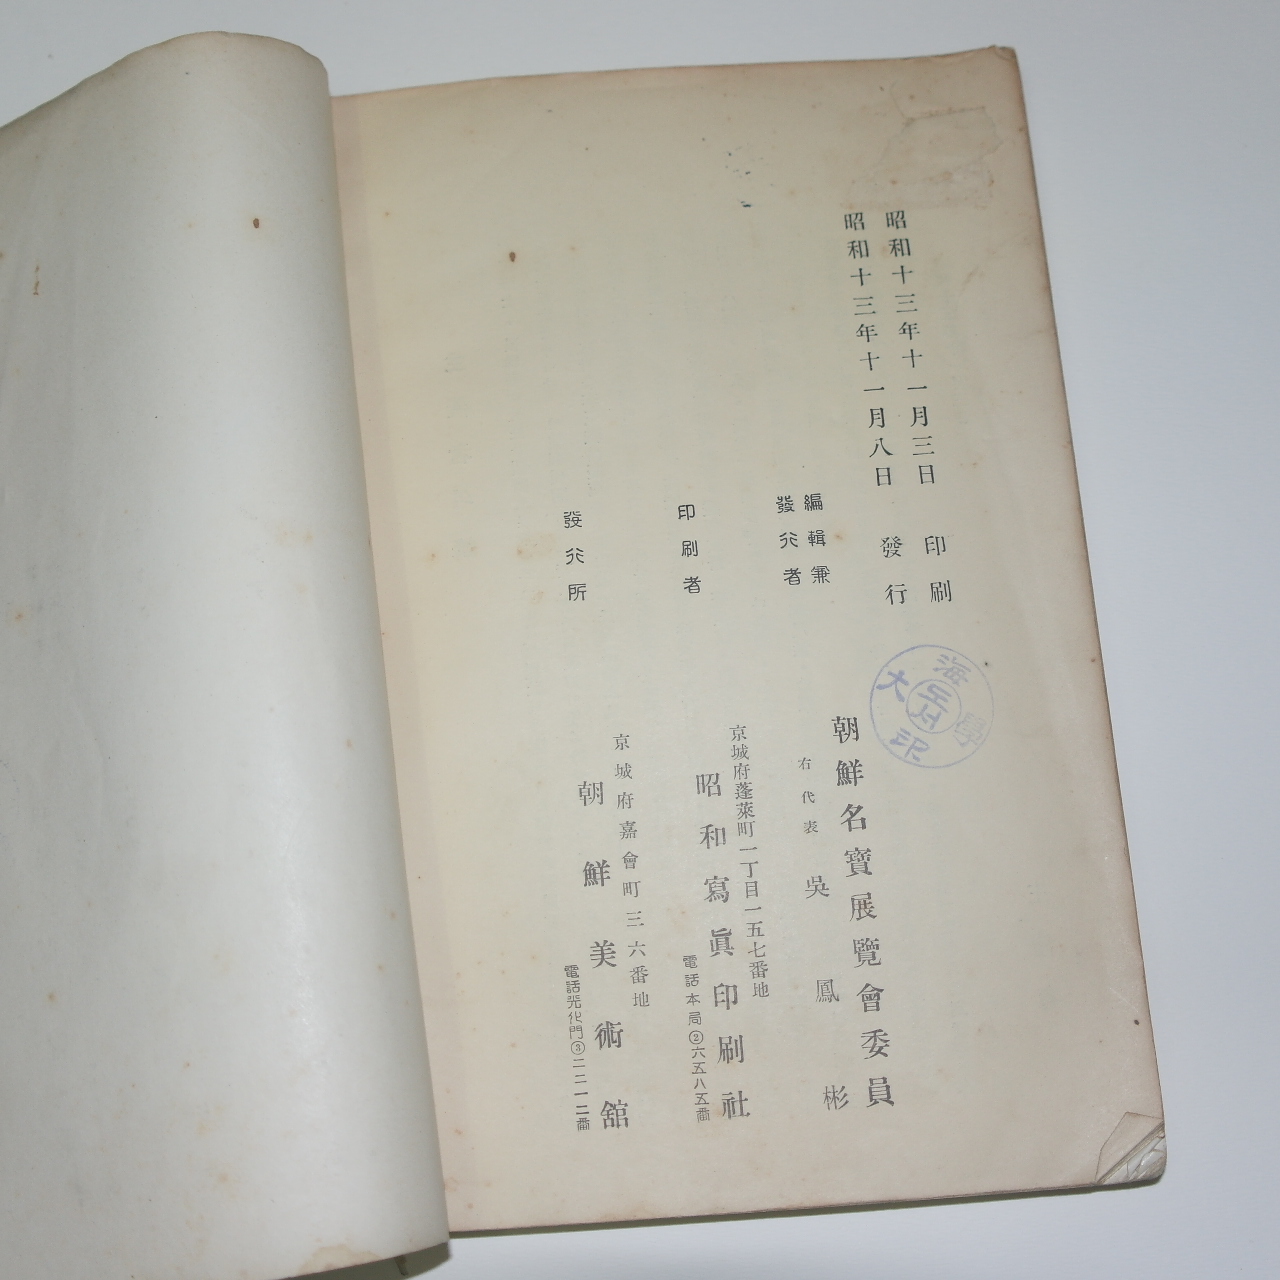 1938년 경성간행 조선명보전람회(朝鮮名寶展覽會圖錄)